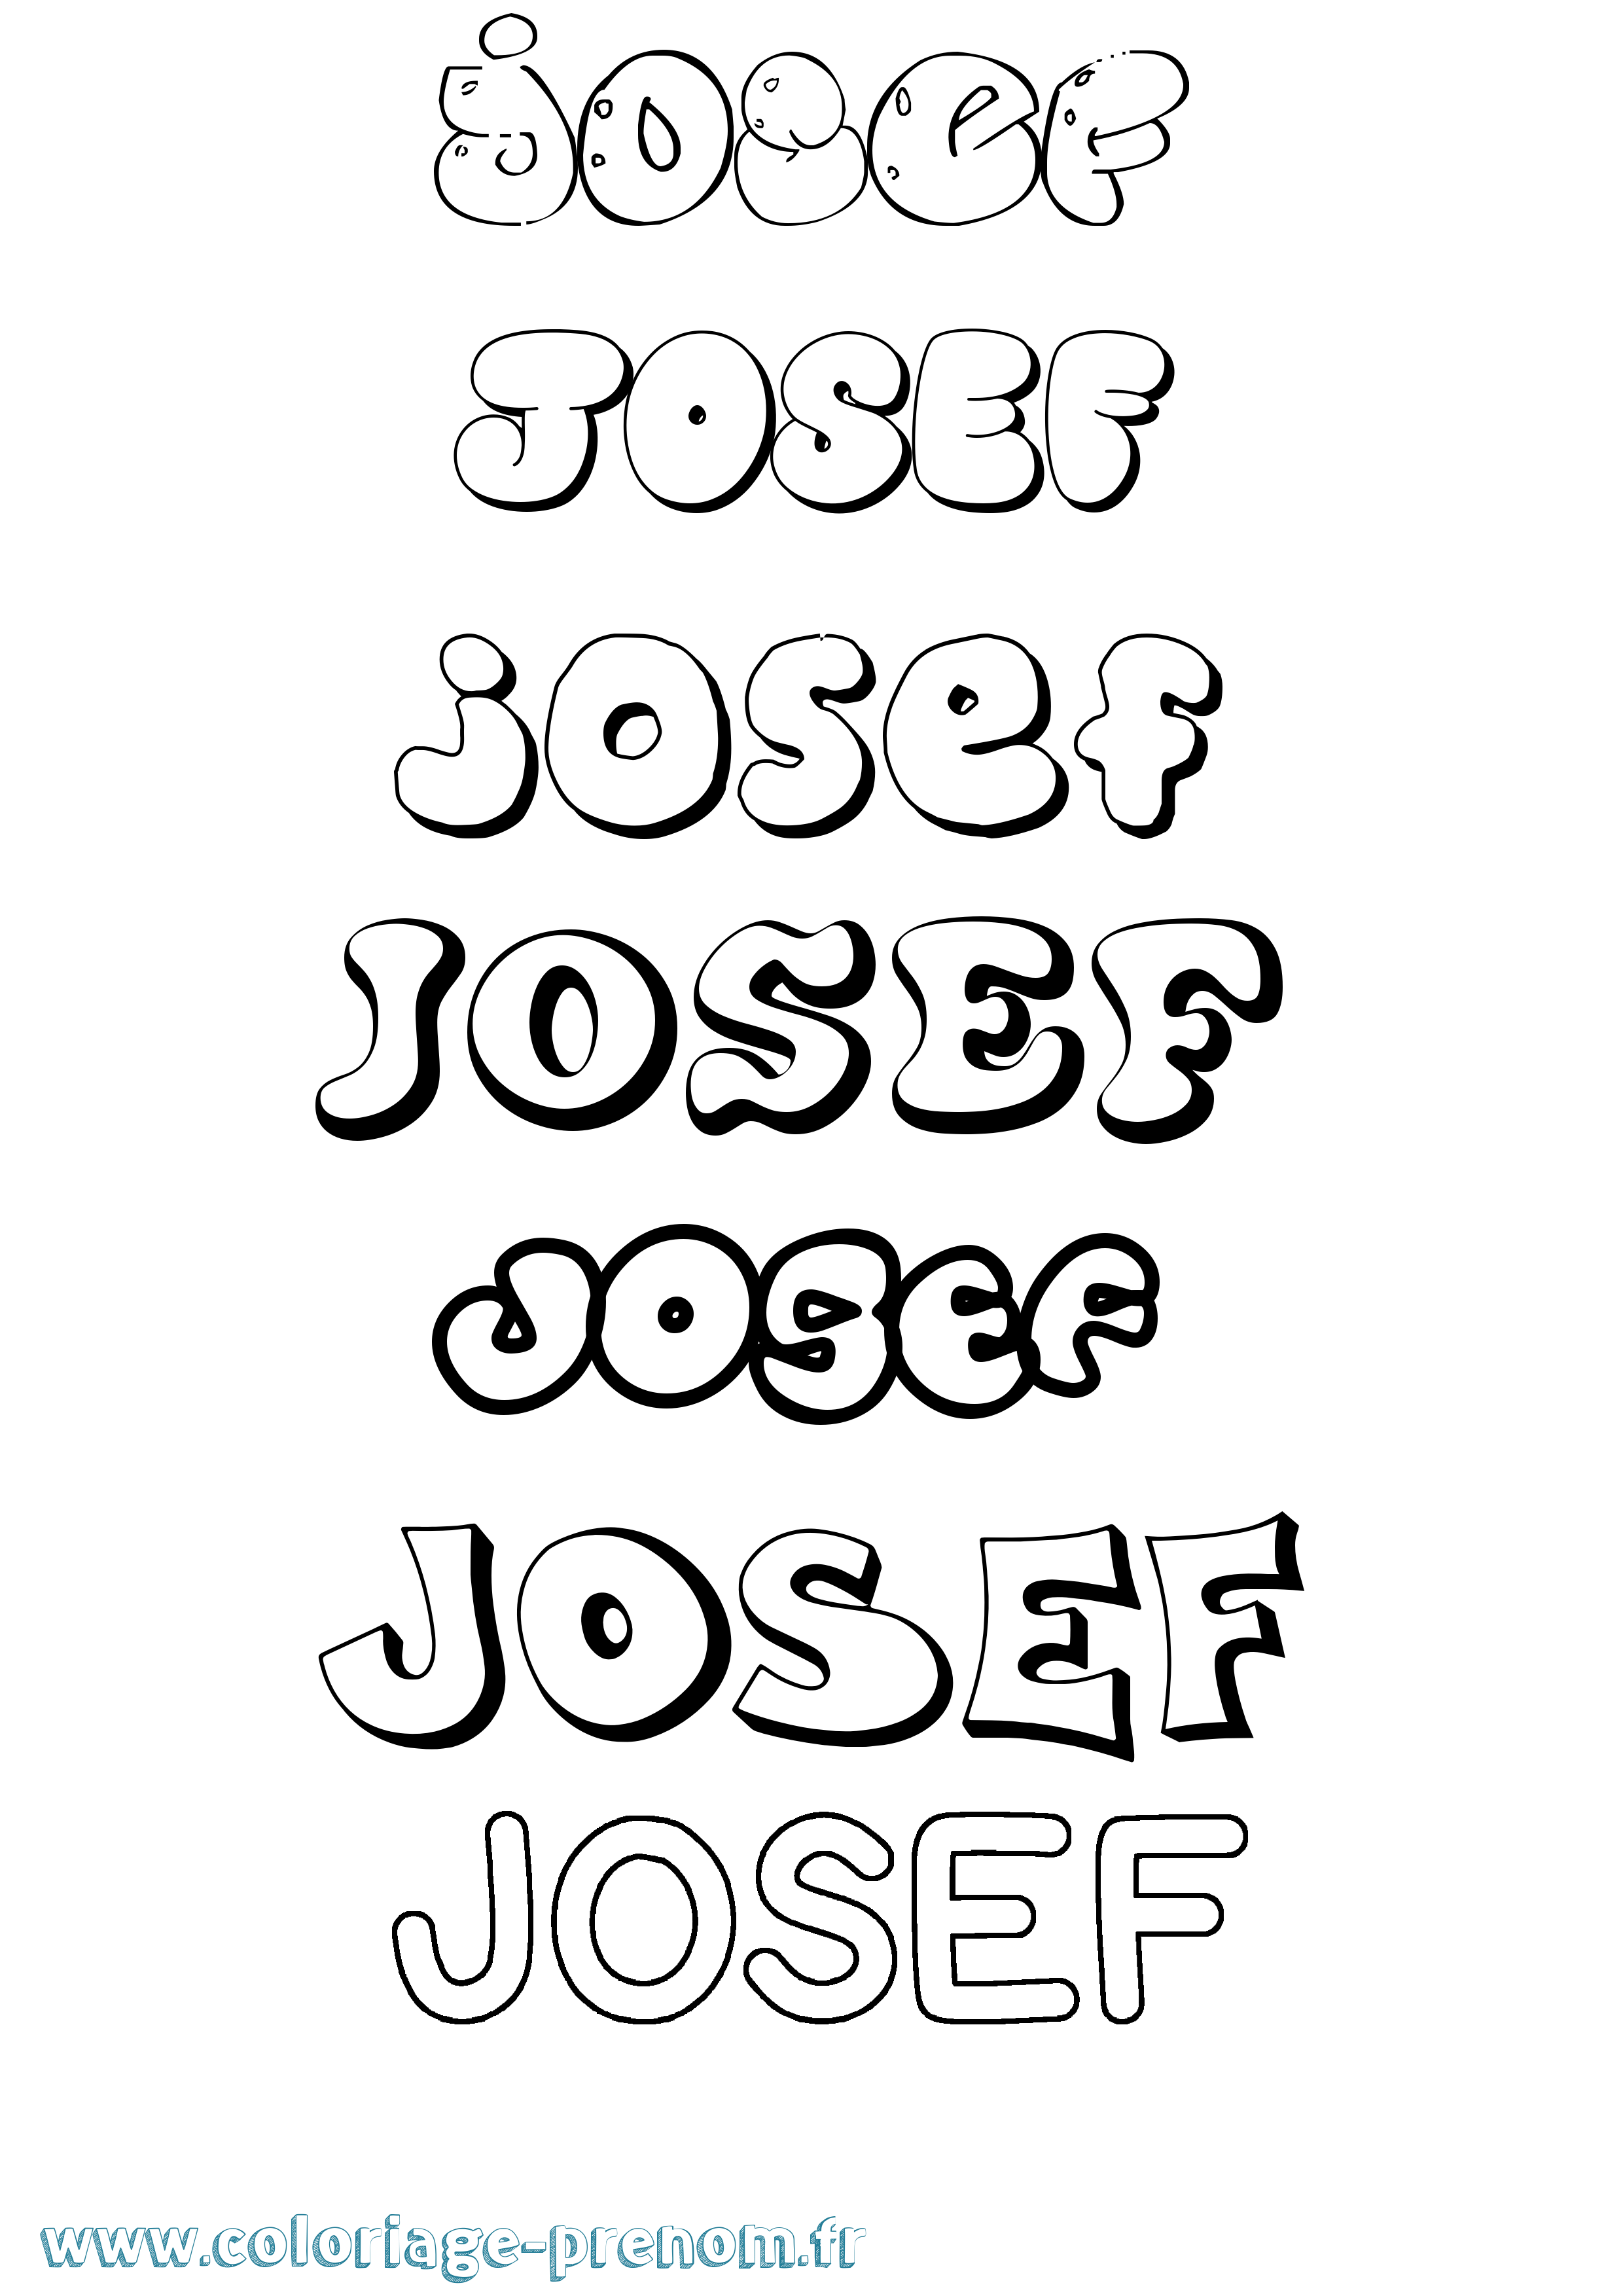 Coloriage prénom Josef Bubble